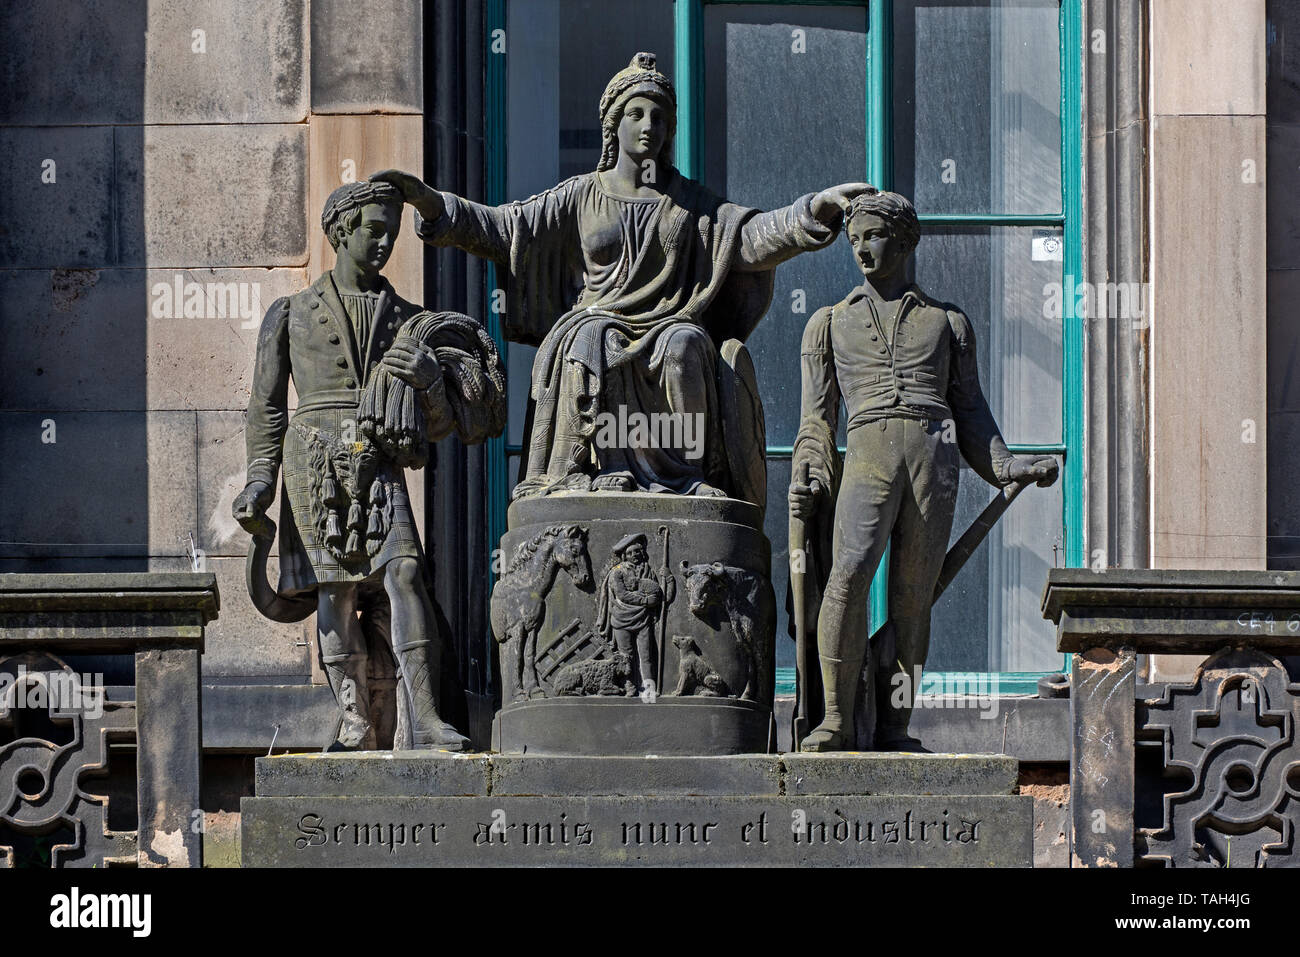 La statua di Caledonia coronamento di suoi figli,un altopiano del Mietitore e un plowboy, su quello che una volta era la sede della società delle Highland di Edimburgo. Foto Stock